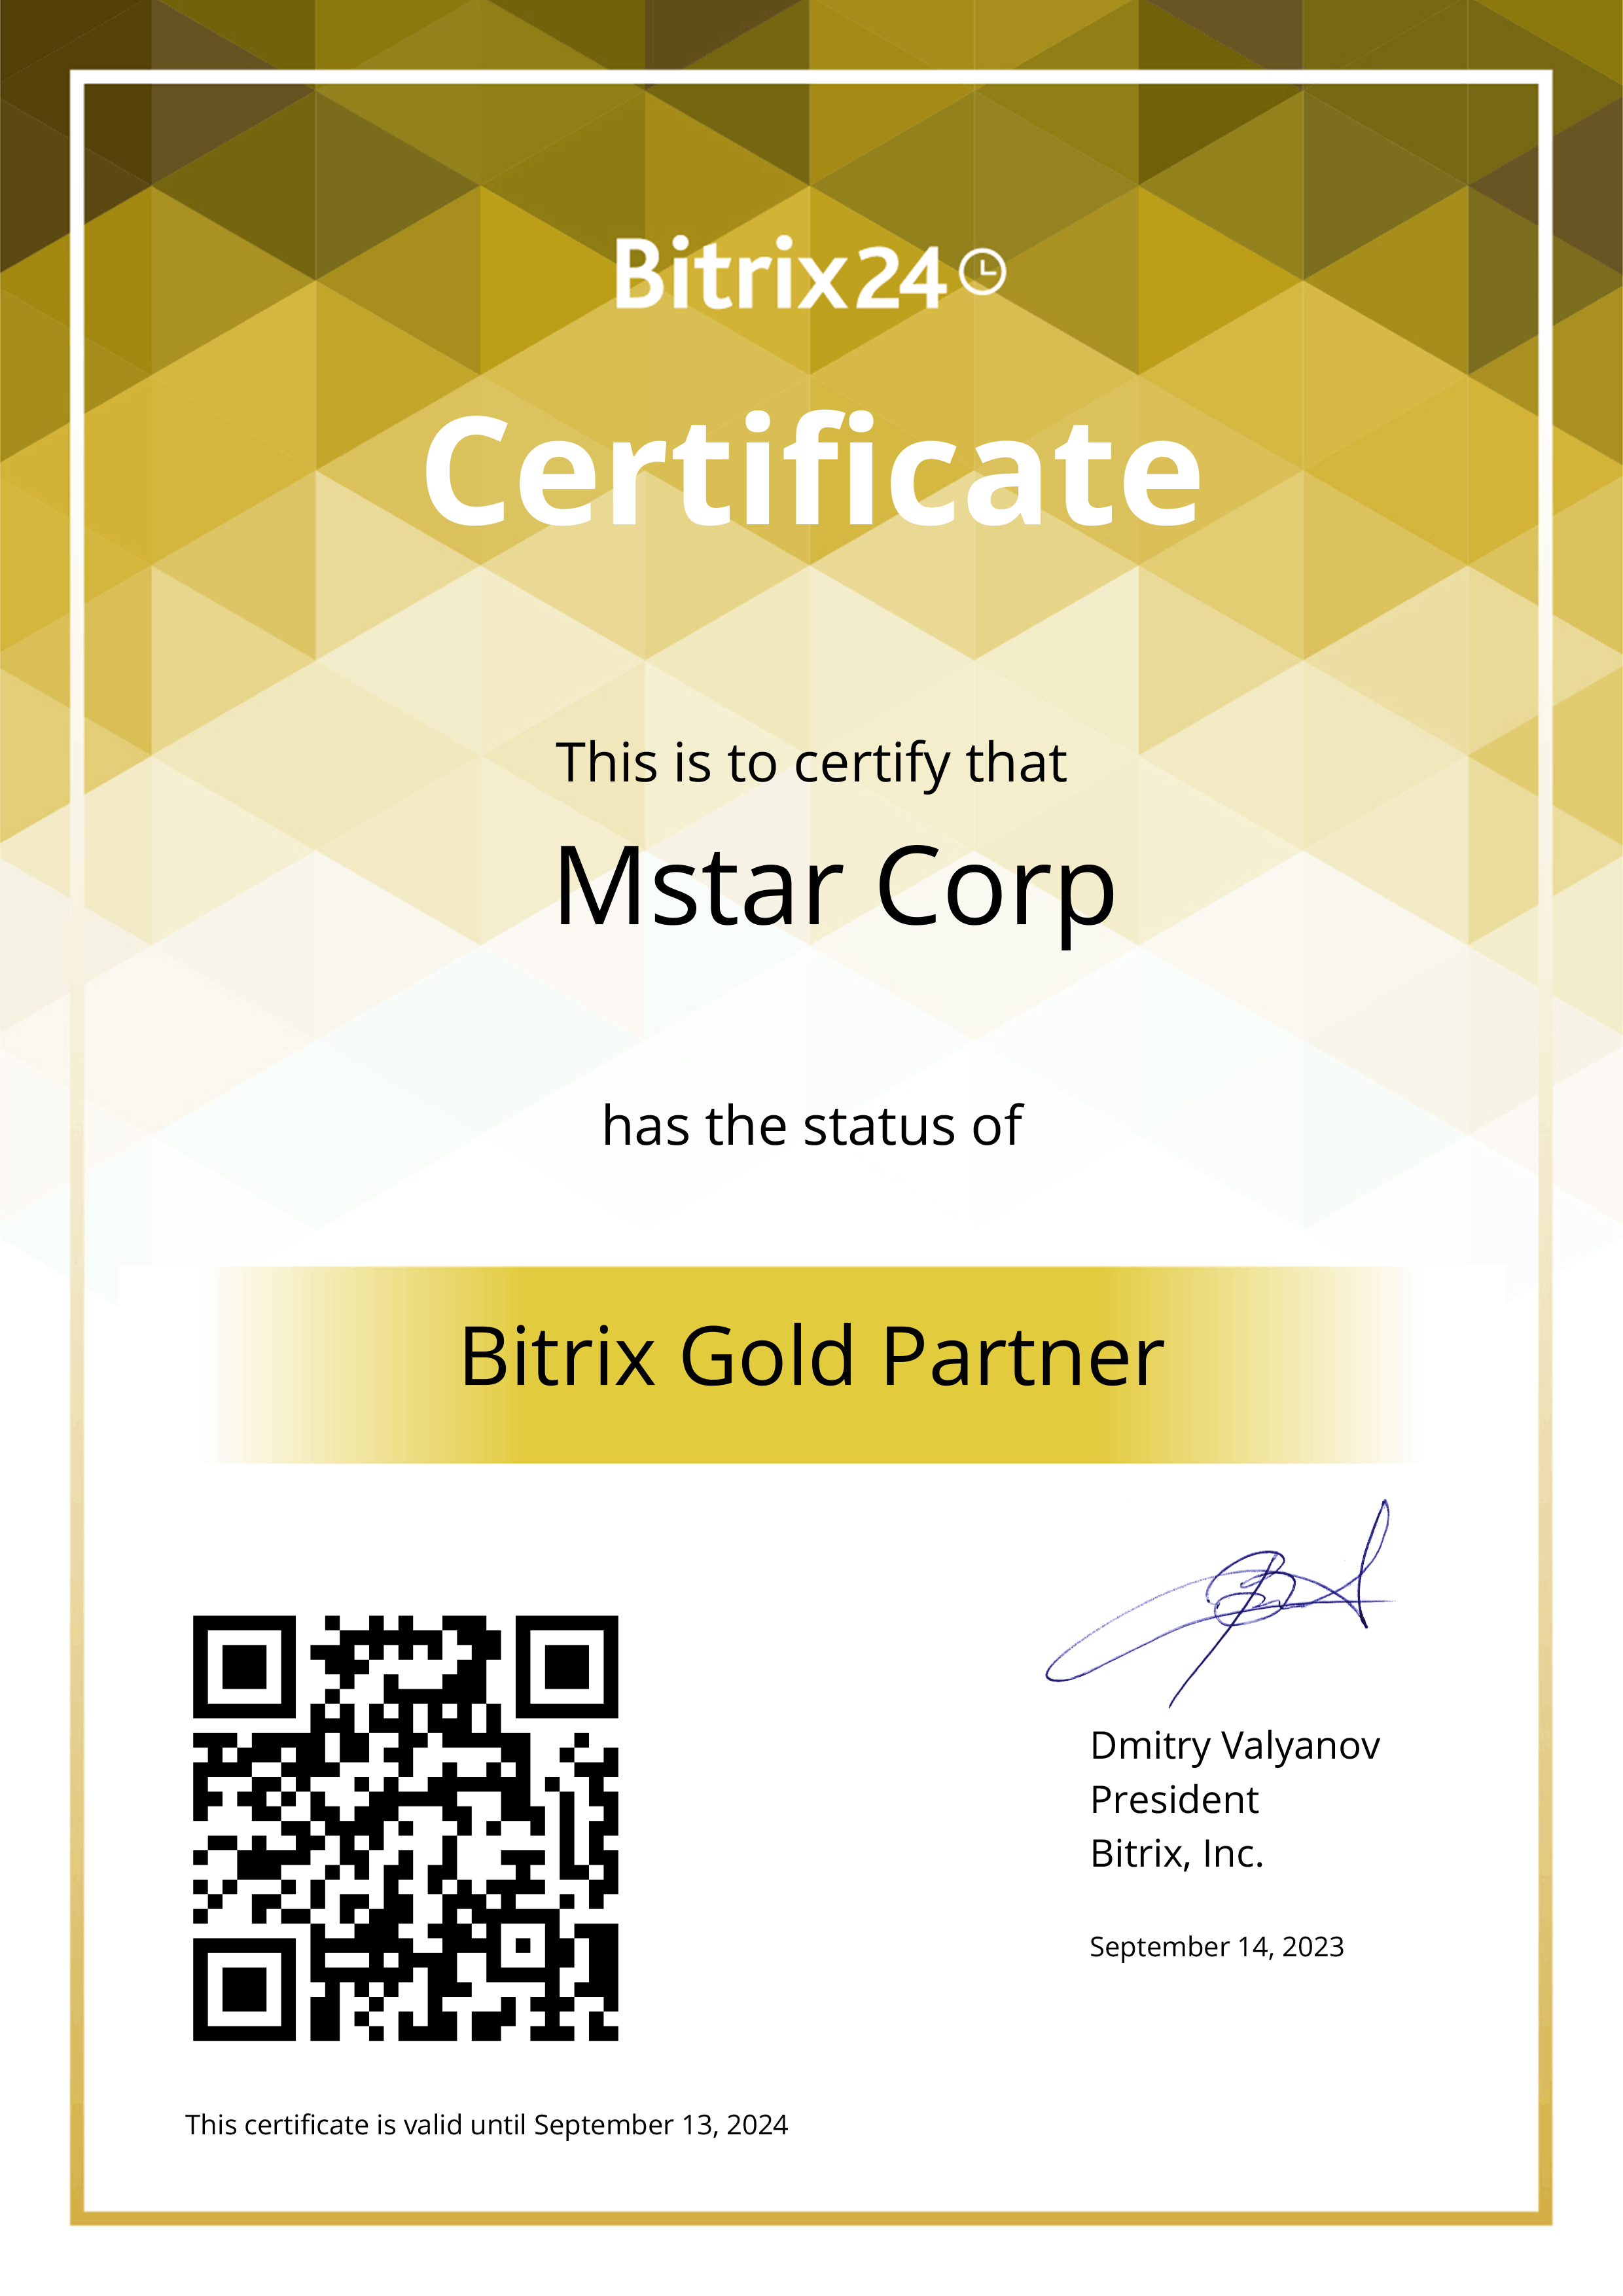 Lợi ích khi sử dụng Giải pháp chuyển đổi số hợp nhất trên nền tảng Bitrix24 của Mstar Corp: Mstar Corp là Bitrix24 Gold Partner